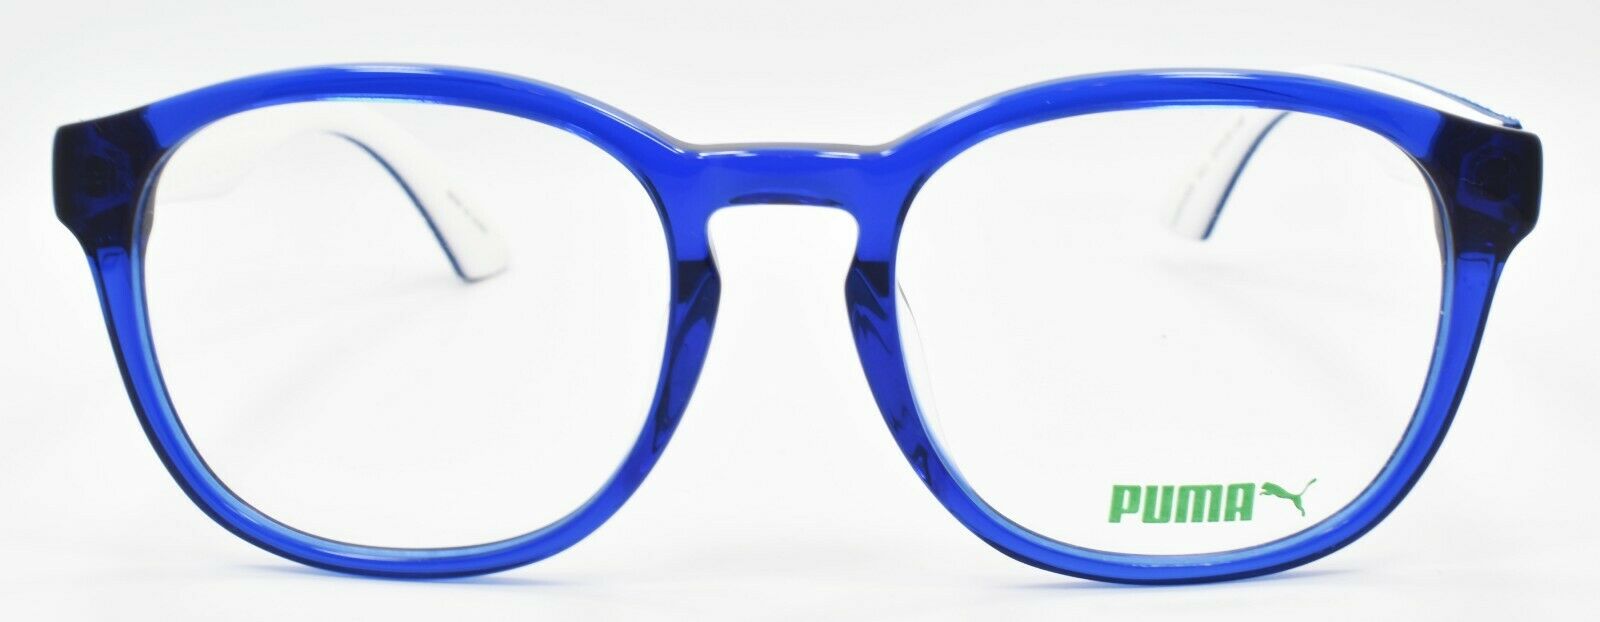 2-PUMA PU0043O 011 Unisex Eyeglasses Frames 53-20-140 Blue w/ Suede + CASE-889652015262-IKSpecs